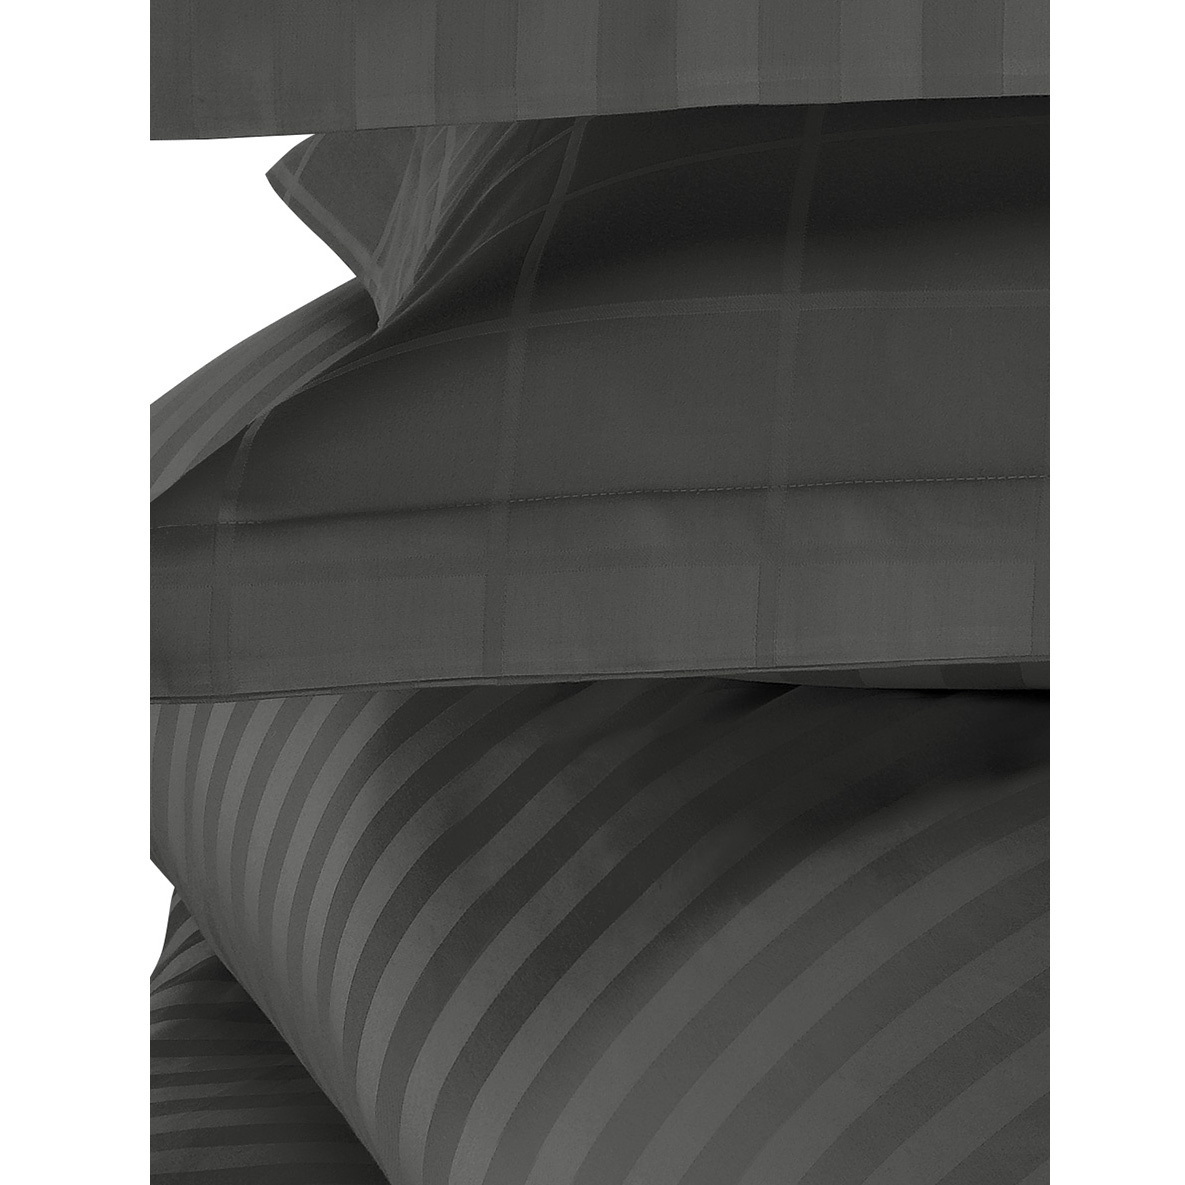 De Witte Lietaer Dekbedovertrek Katoen Satijn Zygo - Lits Jumeaux - 240 x 220 cm - Zwart